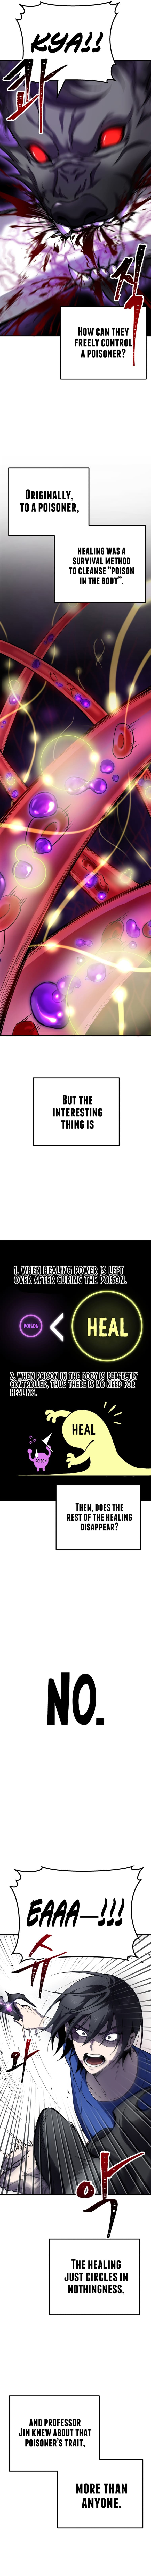 Poison-Eating Healer chapter 9